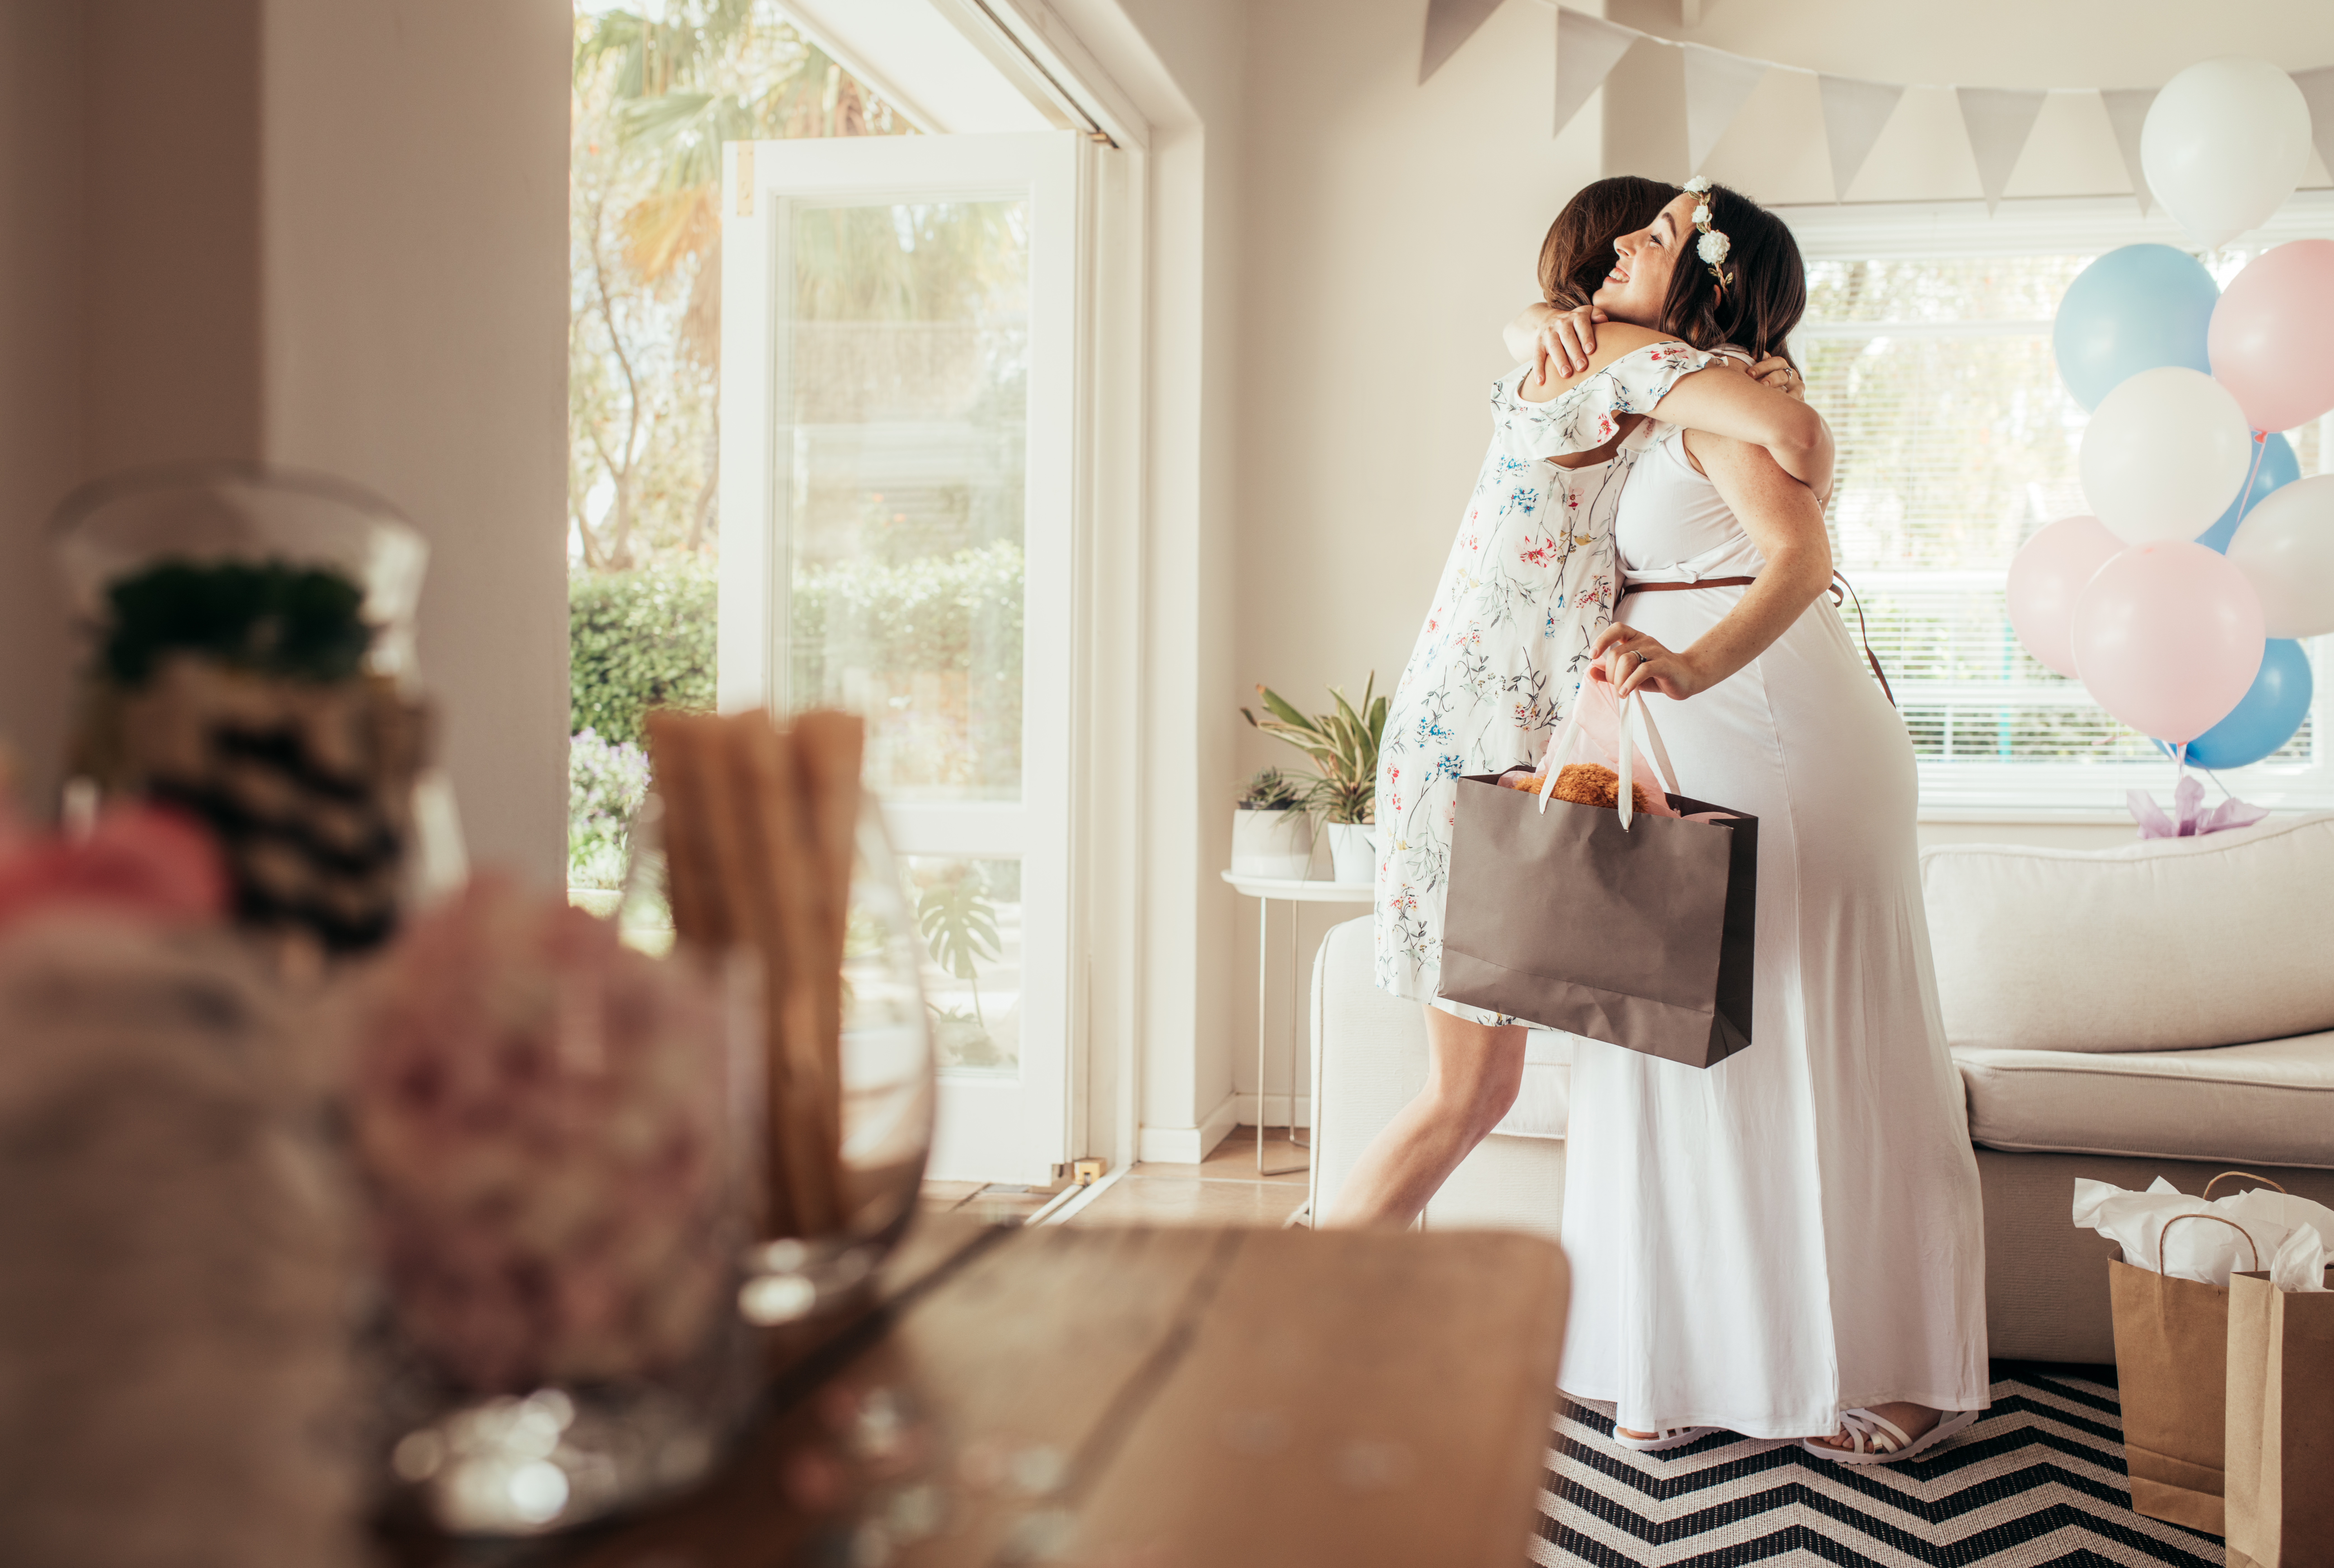 Frau umarmt werdende Mutter bei Babyparty | Quelle: Shutterstock